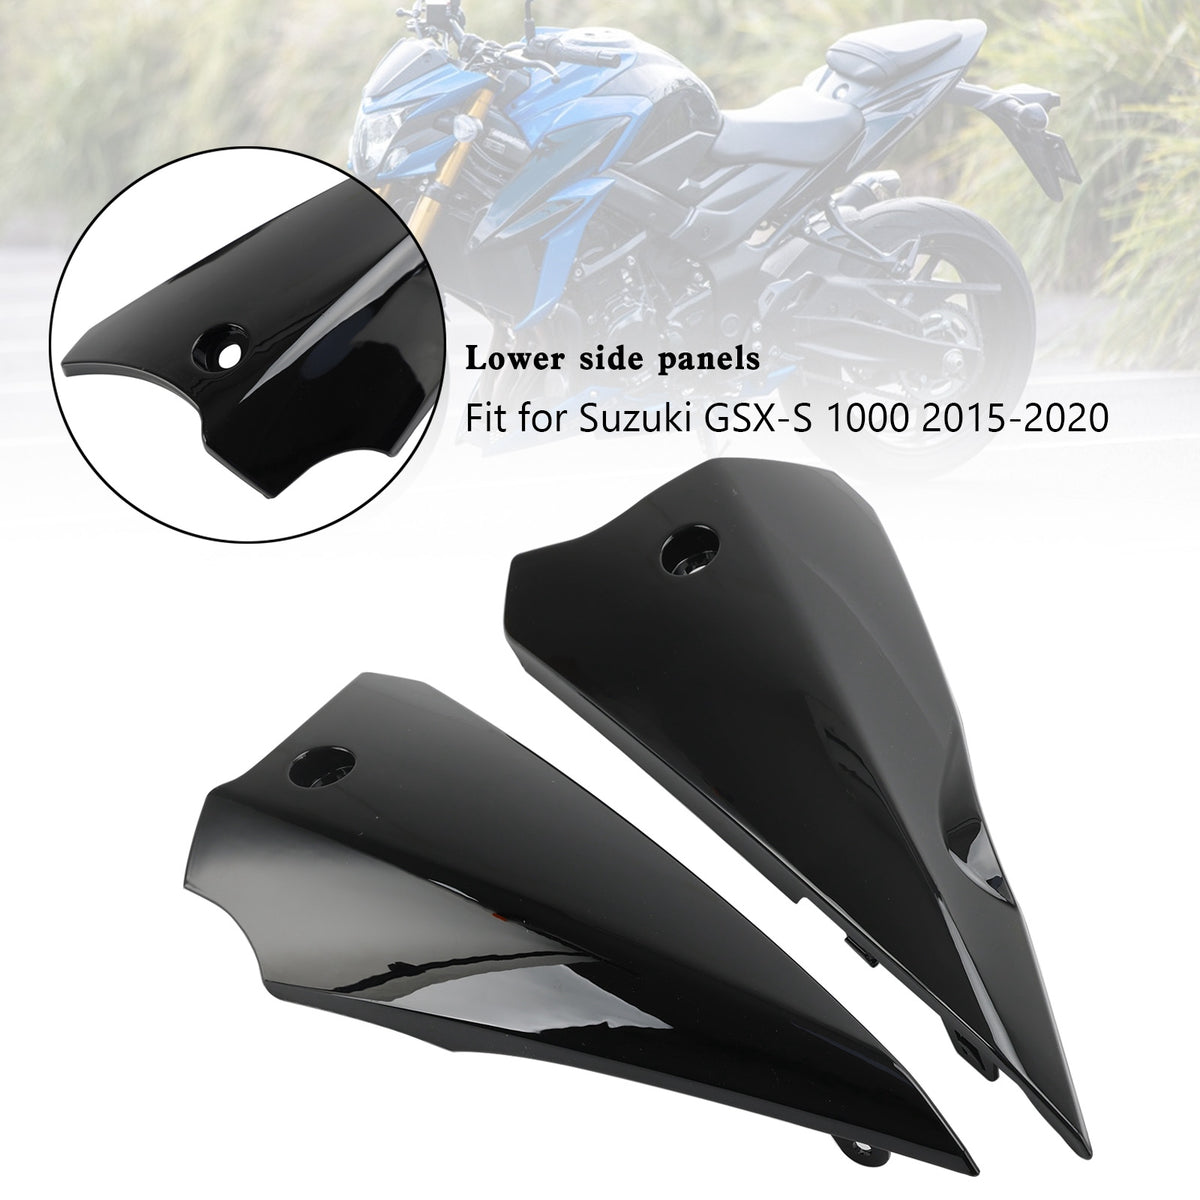 Pannelli superiori della carenatura laterale inferiore per Suzuki GSX-S 1000 2015-2020